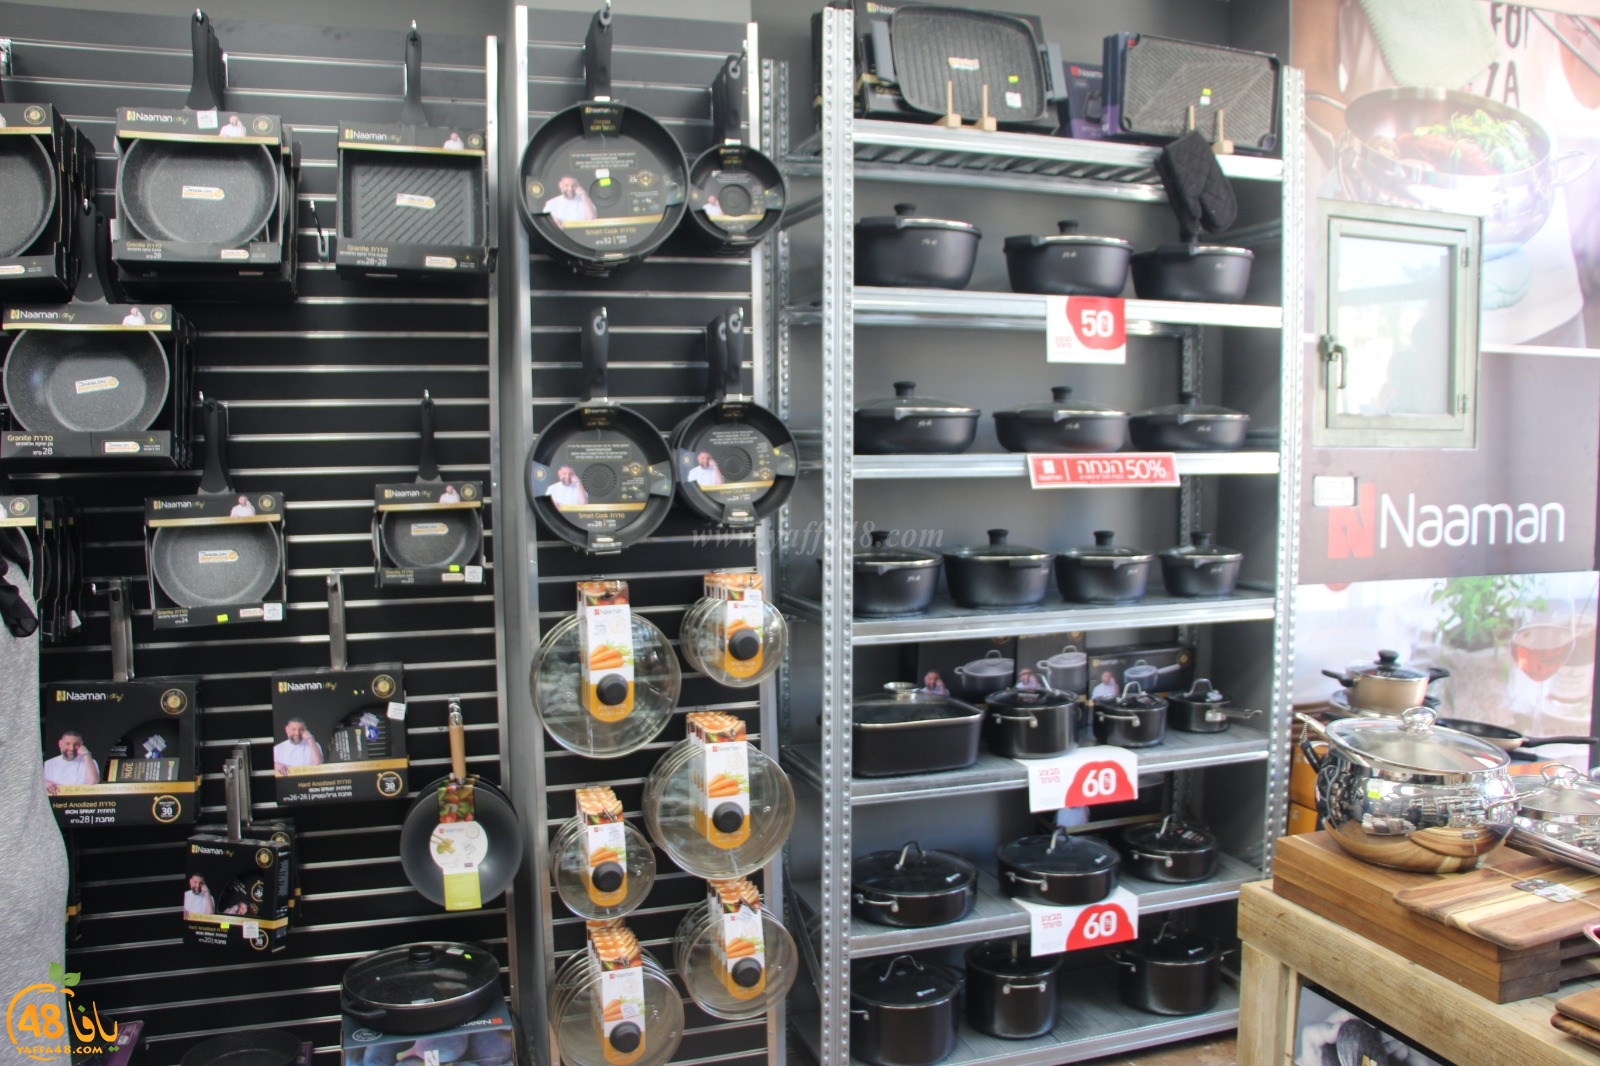 بالصور: افتتاح فرع جديد لمحلات نعمان للأدوات المنزلية بيافا وحملة تخفيضات